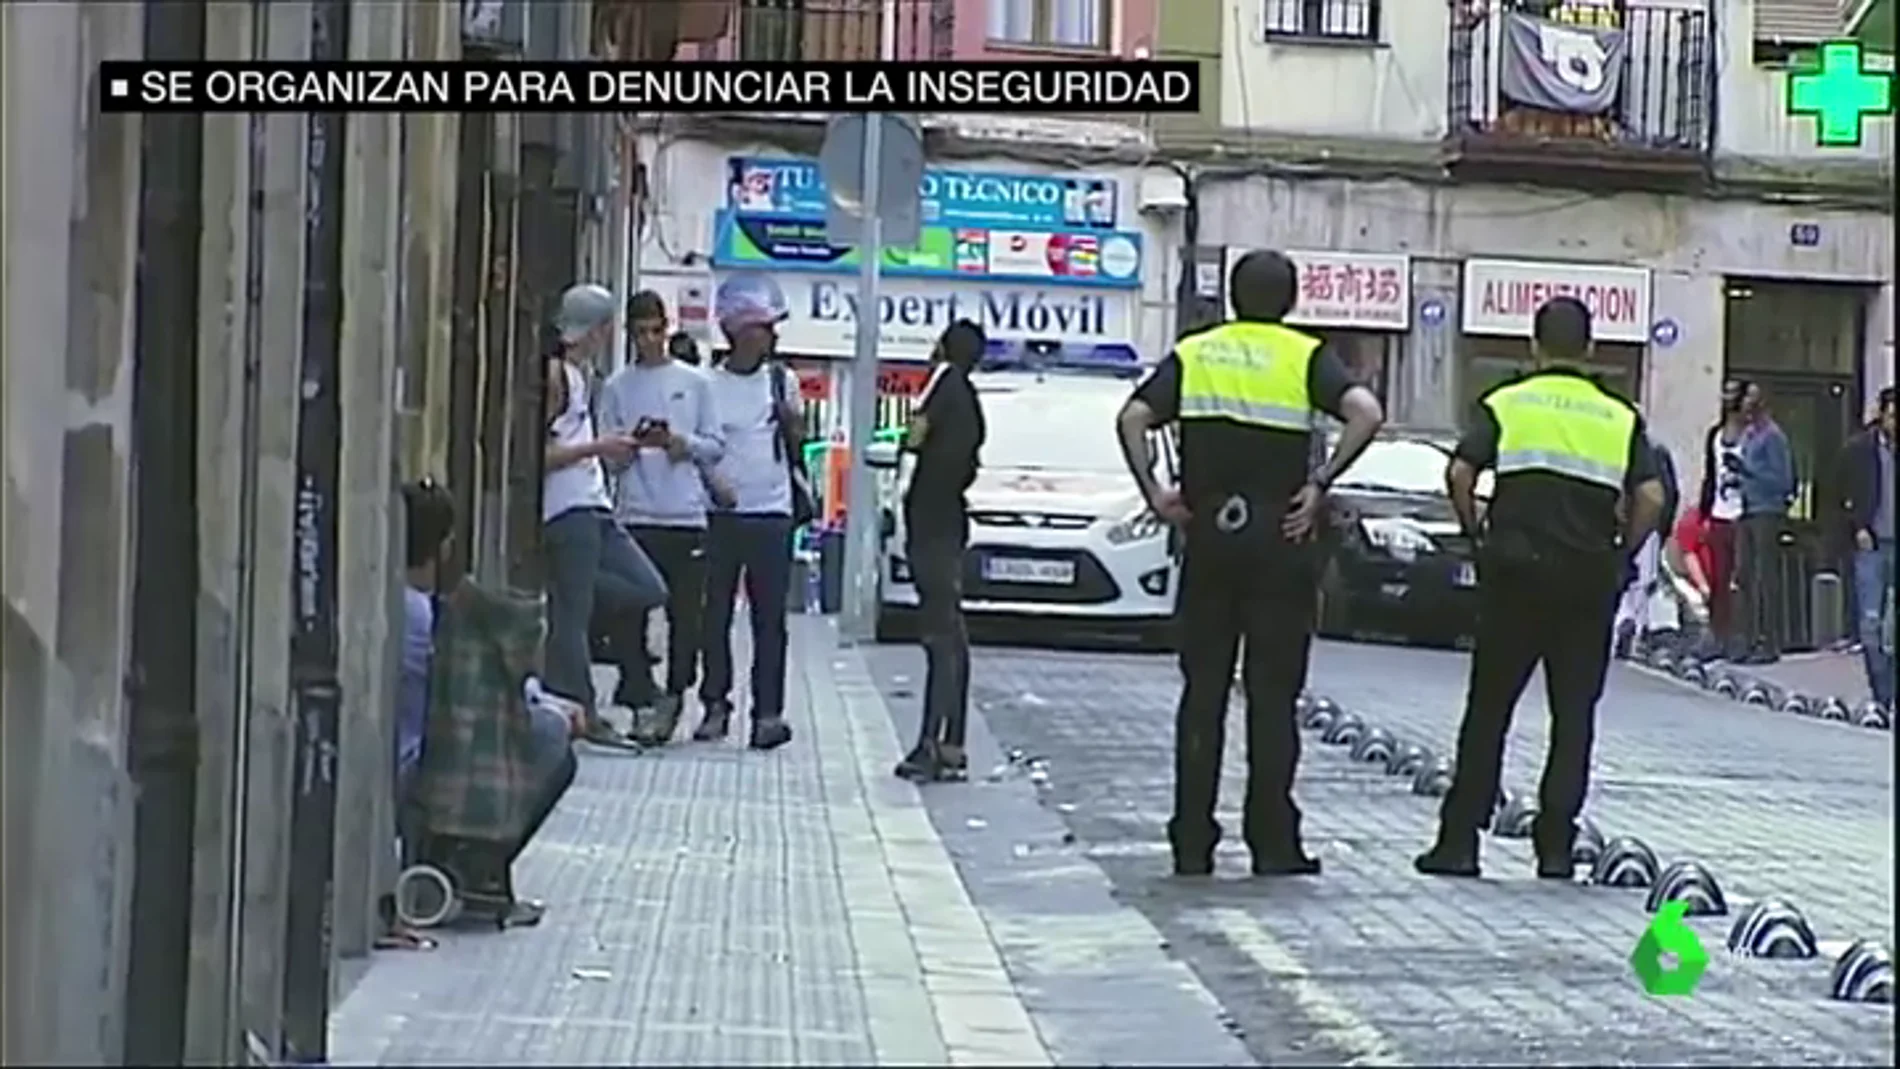 Los vecinos de un barrio de Bilbao denuncian la inseguridad en sus calles: "Roban las cámaras y los móviles a los turistas"